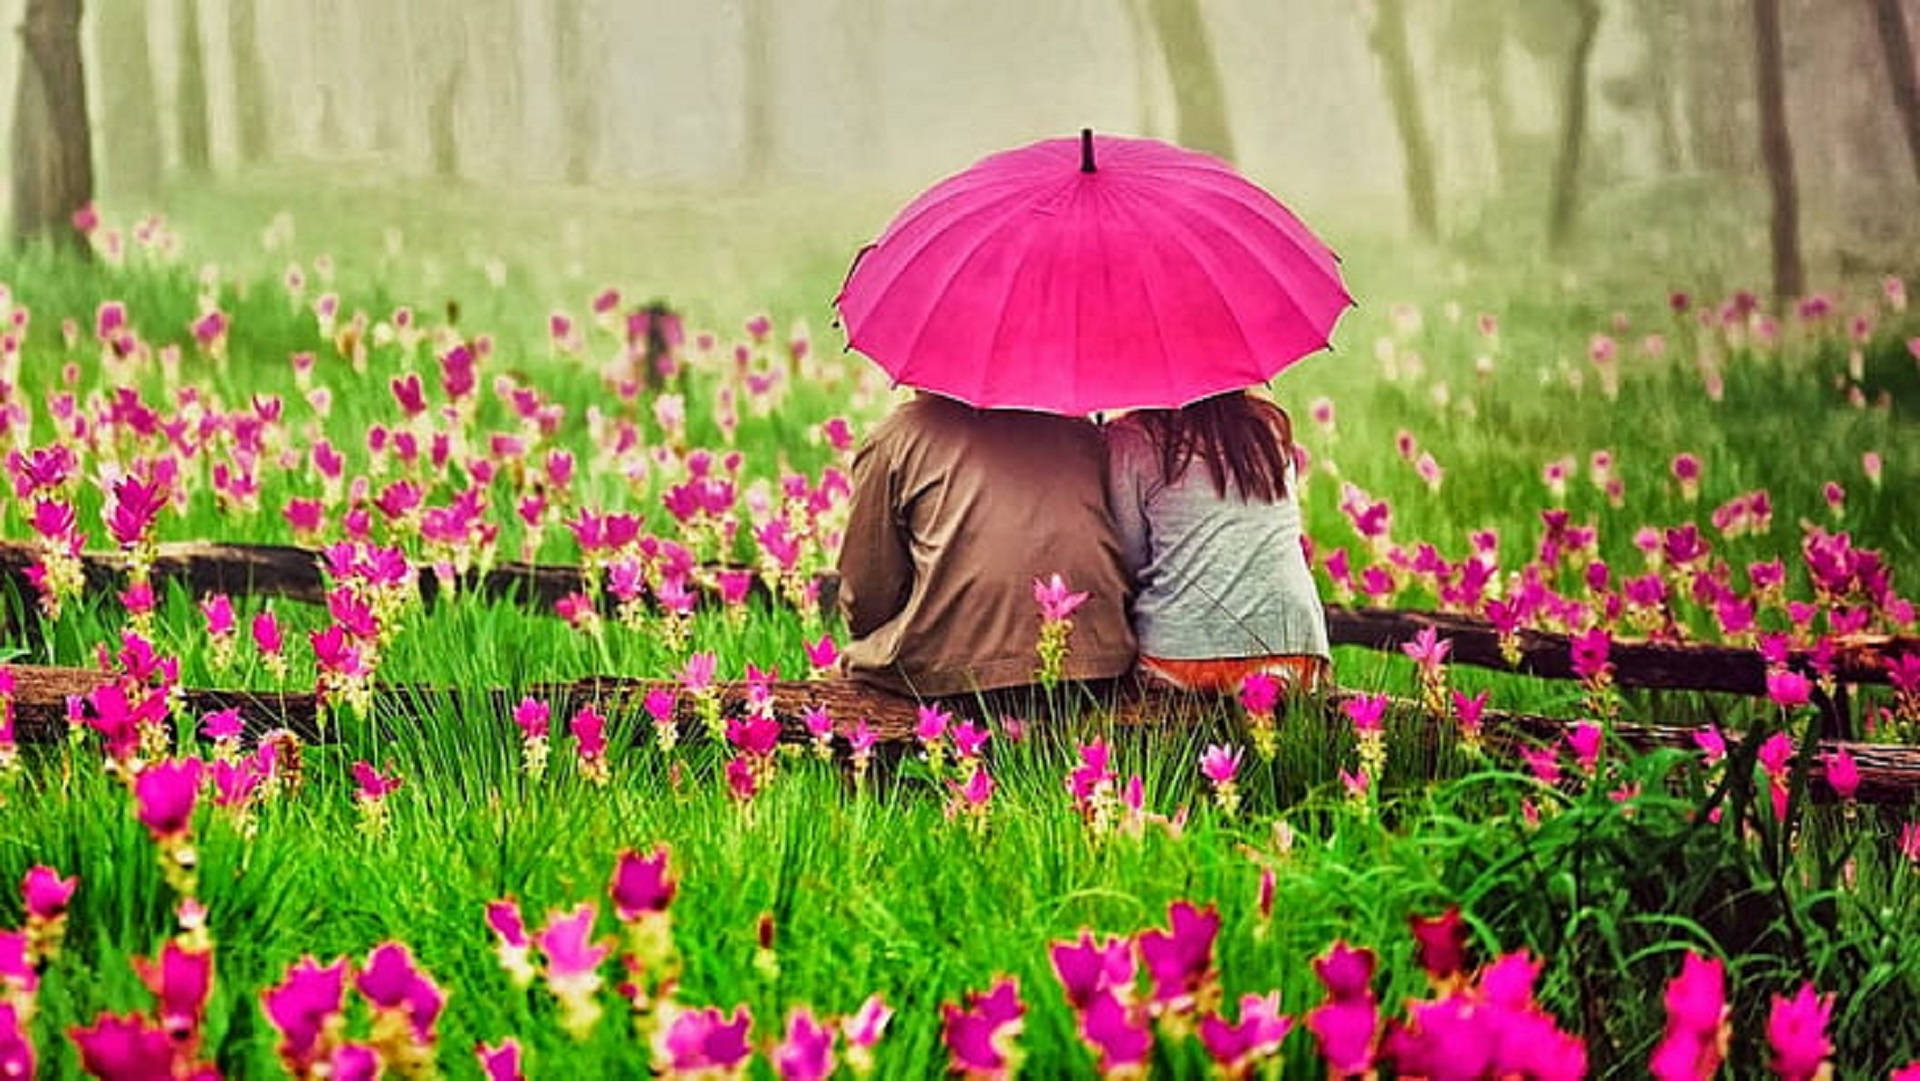 Romantic Love In A Flower Garden